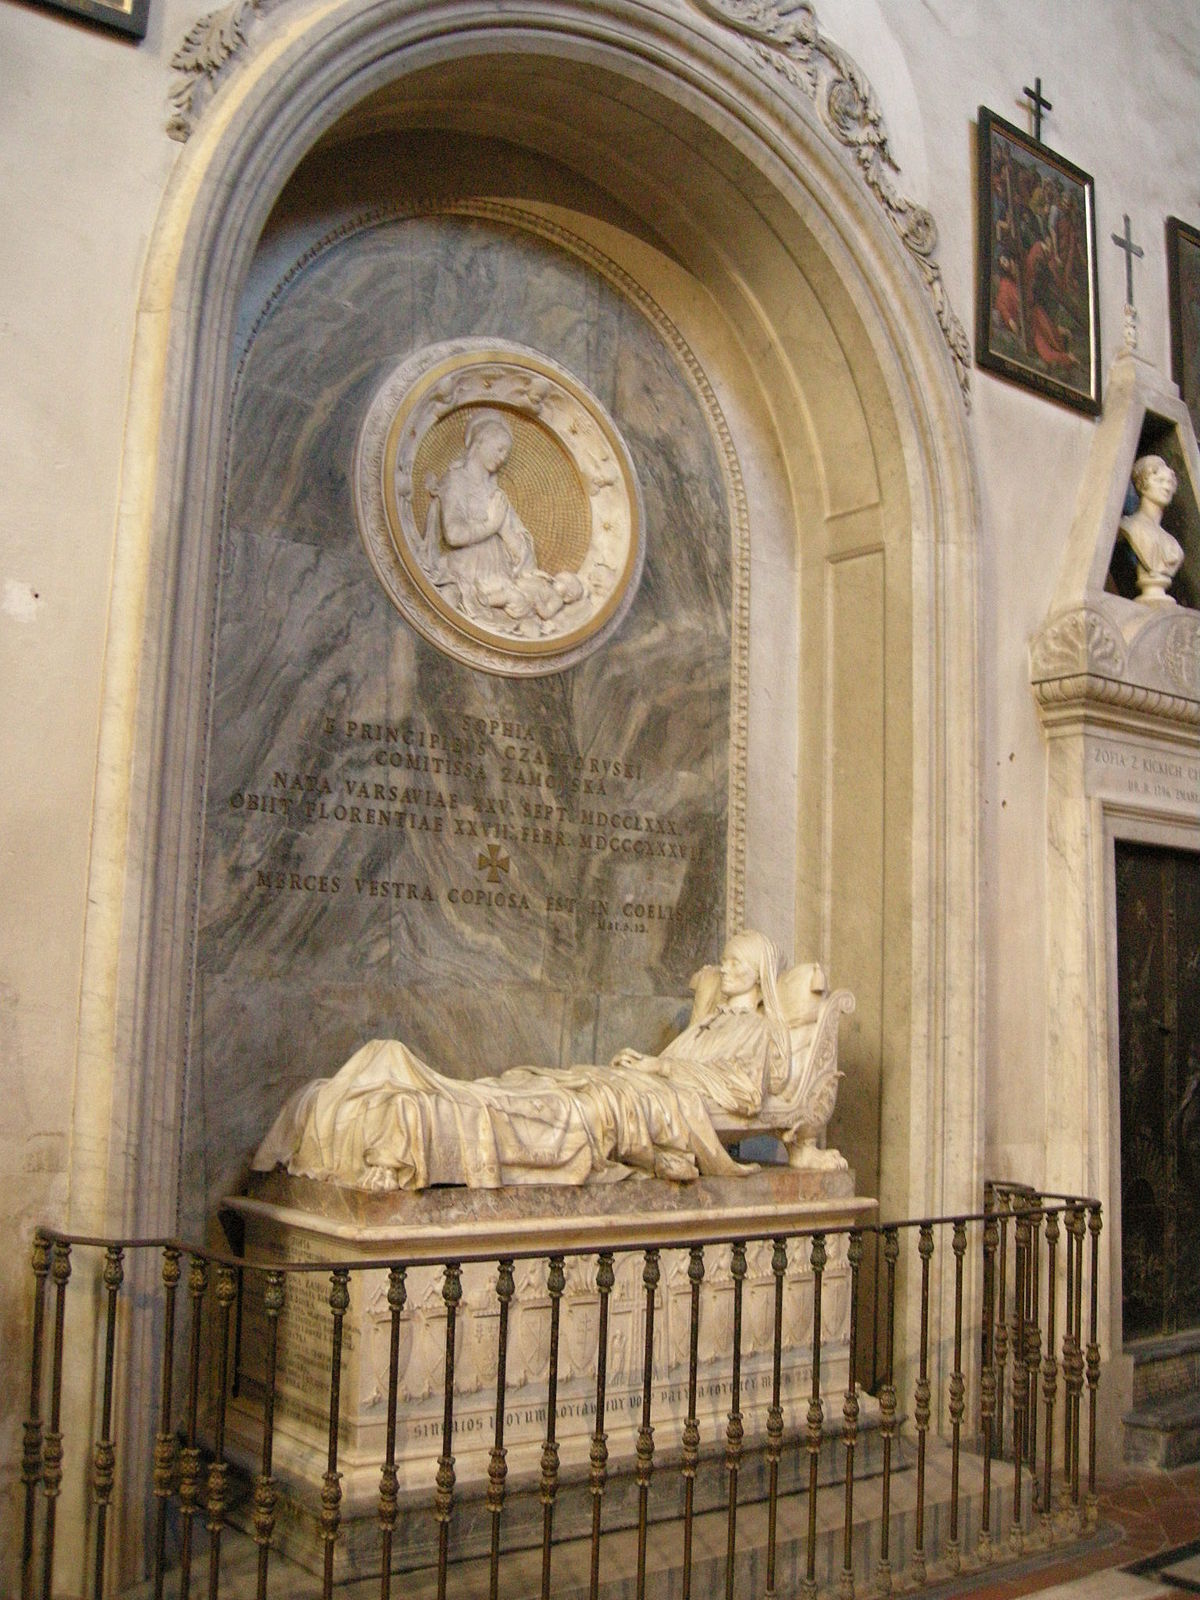 File:Cappella machiavelli-salviati, tomba della contessa sofia zamoyska di  lorenzo bartolini (1837-44) 01.JPG - Wikimedia Commons